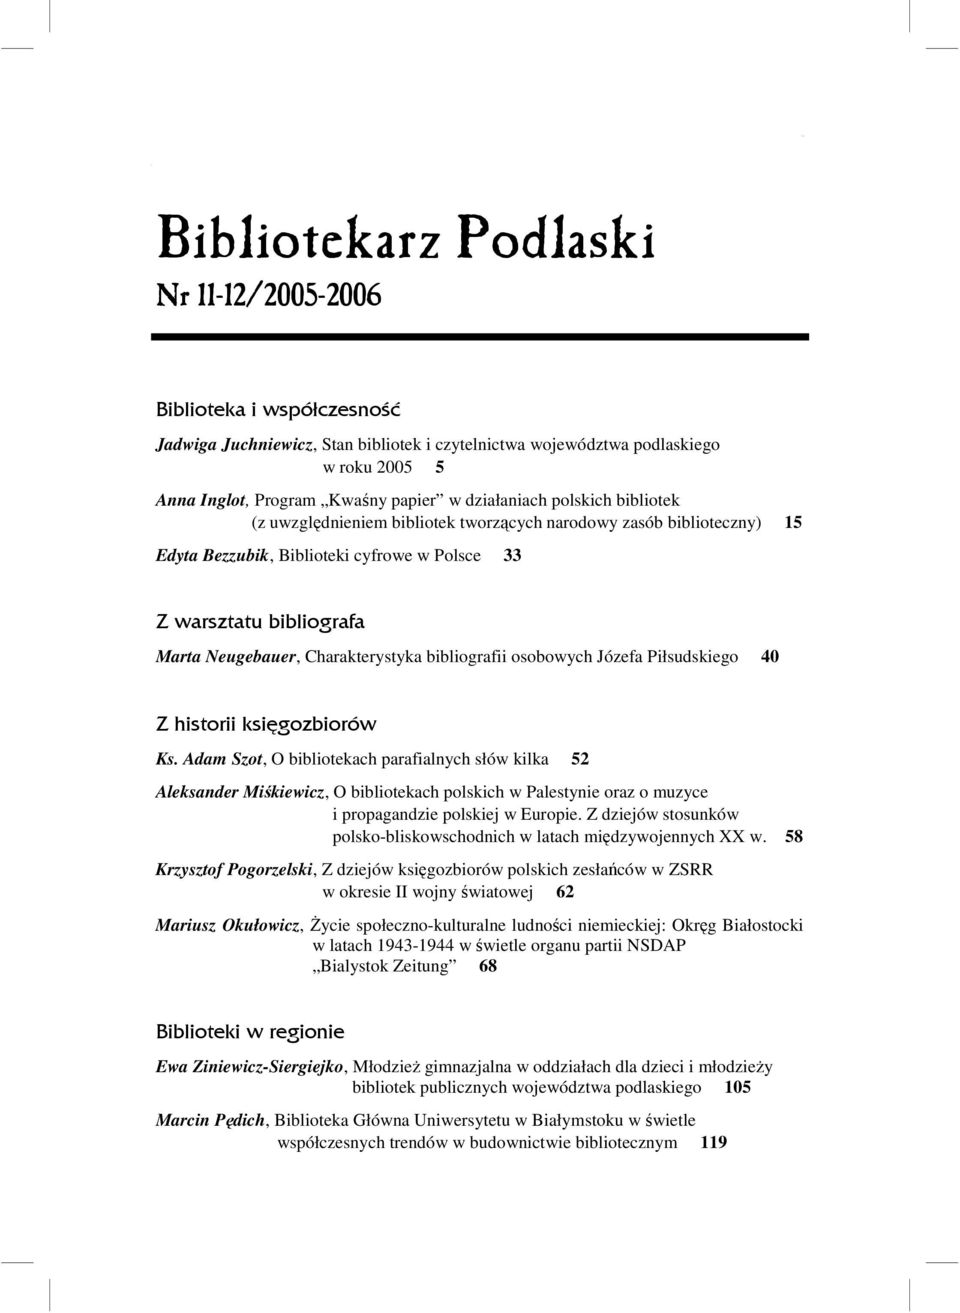 bibliografa Marta Neugebauer, Charakterystyka bibliografii osobowych Józefa Piłsudskiego 40 Z historii księgozbiorów Ks.